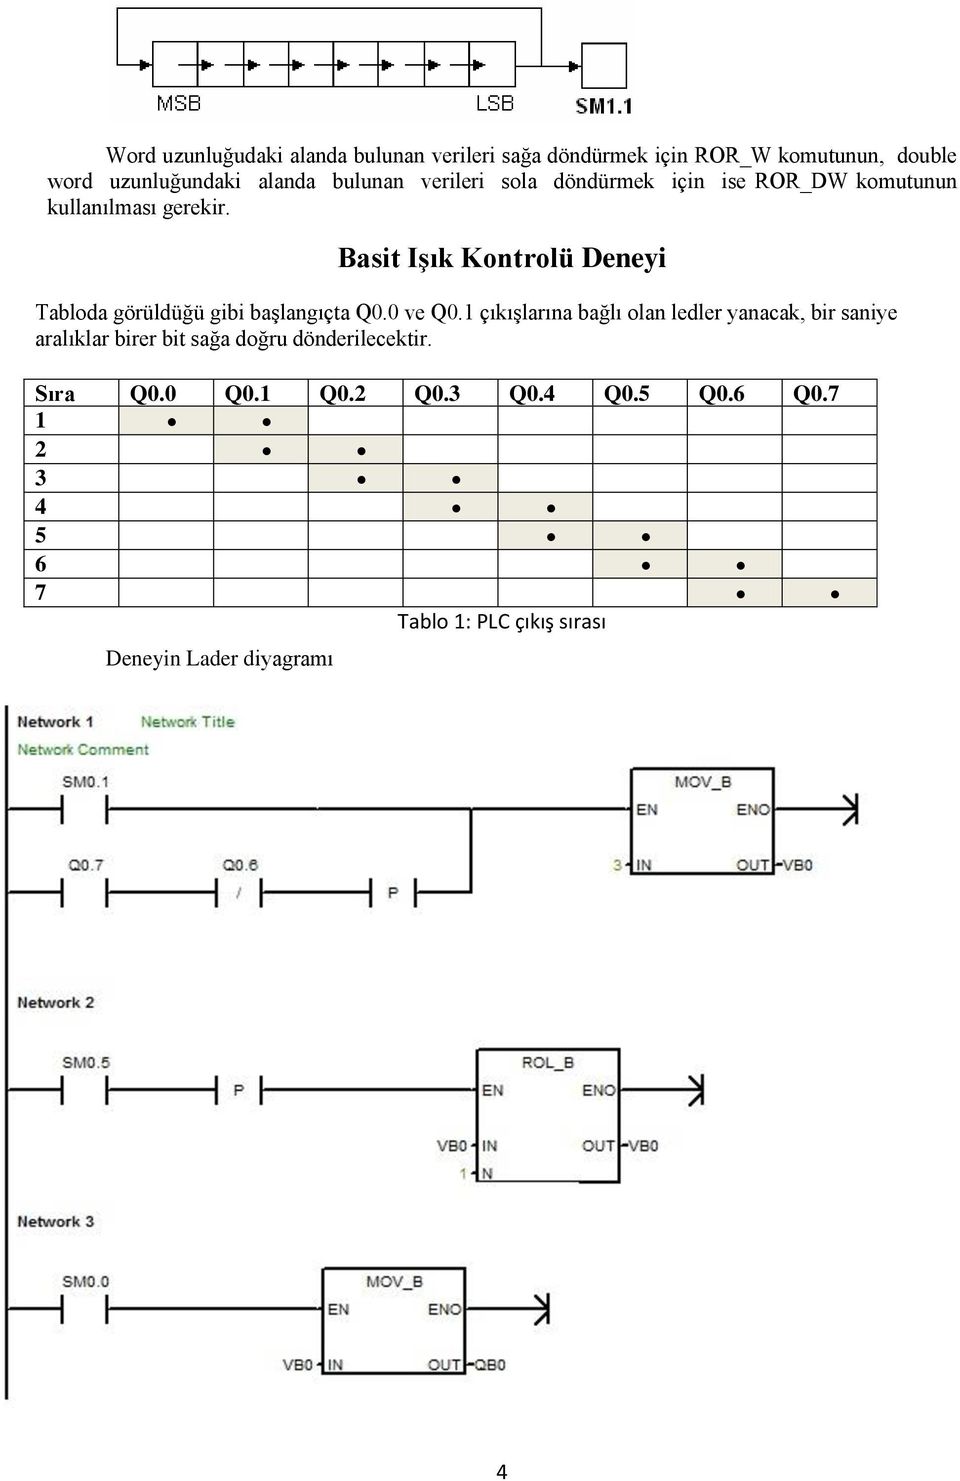 Basit Işık Kontrolü Deneyi Tabloda görüldüğü gibi başlangıçta Q0.0 ve Q0.